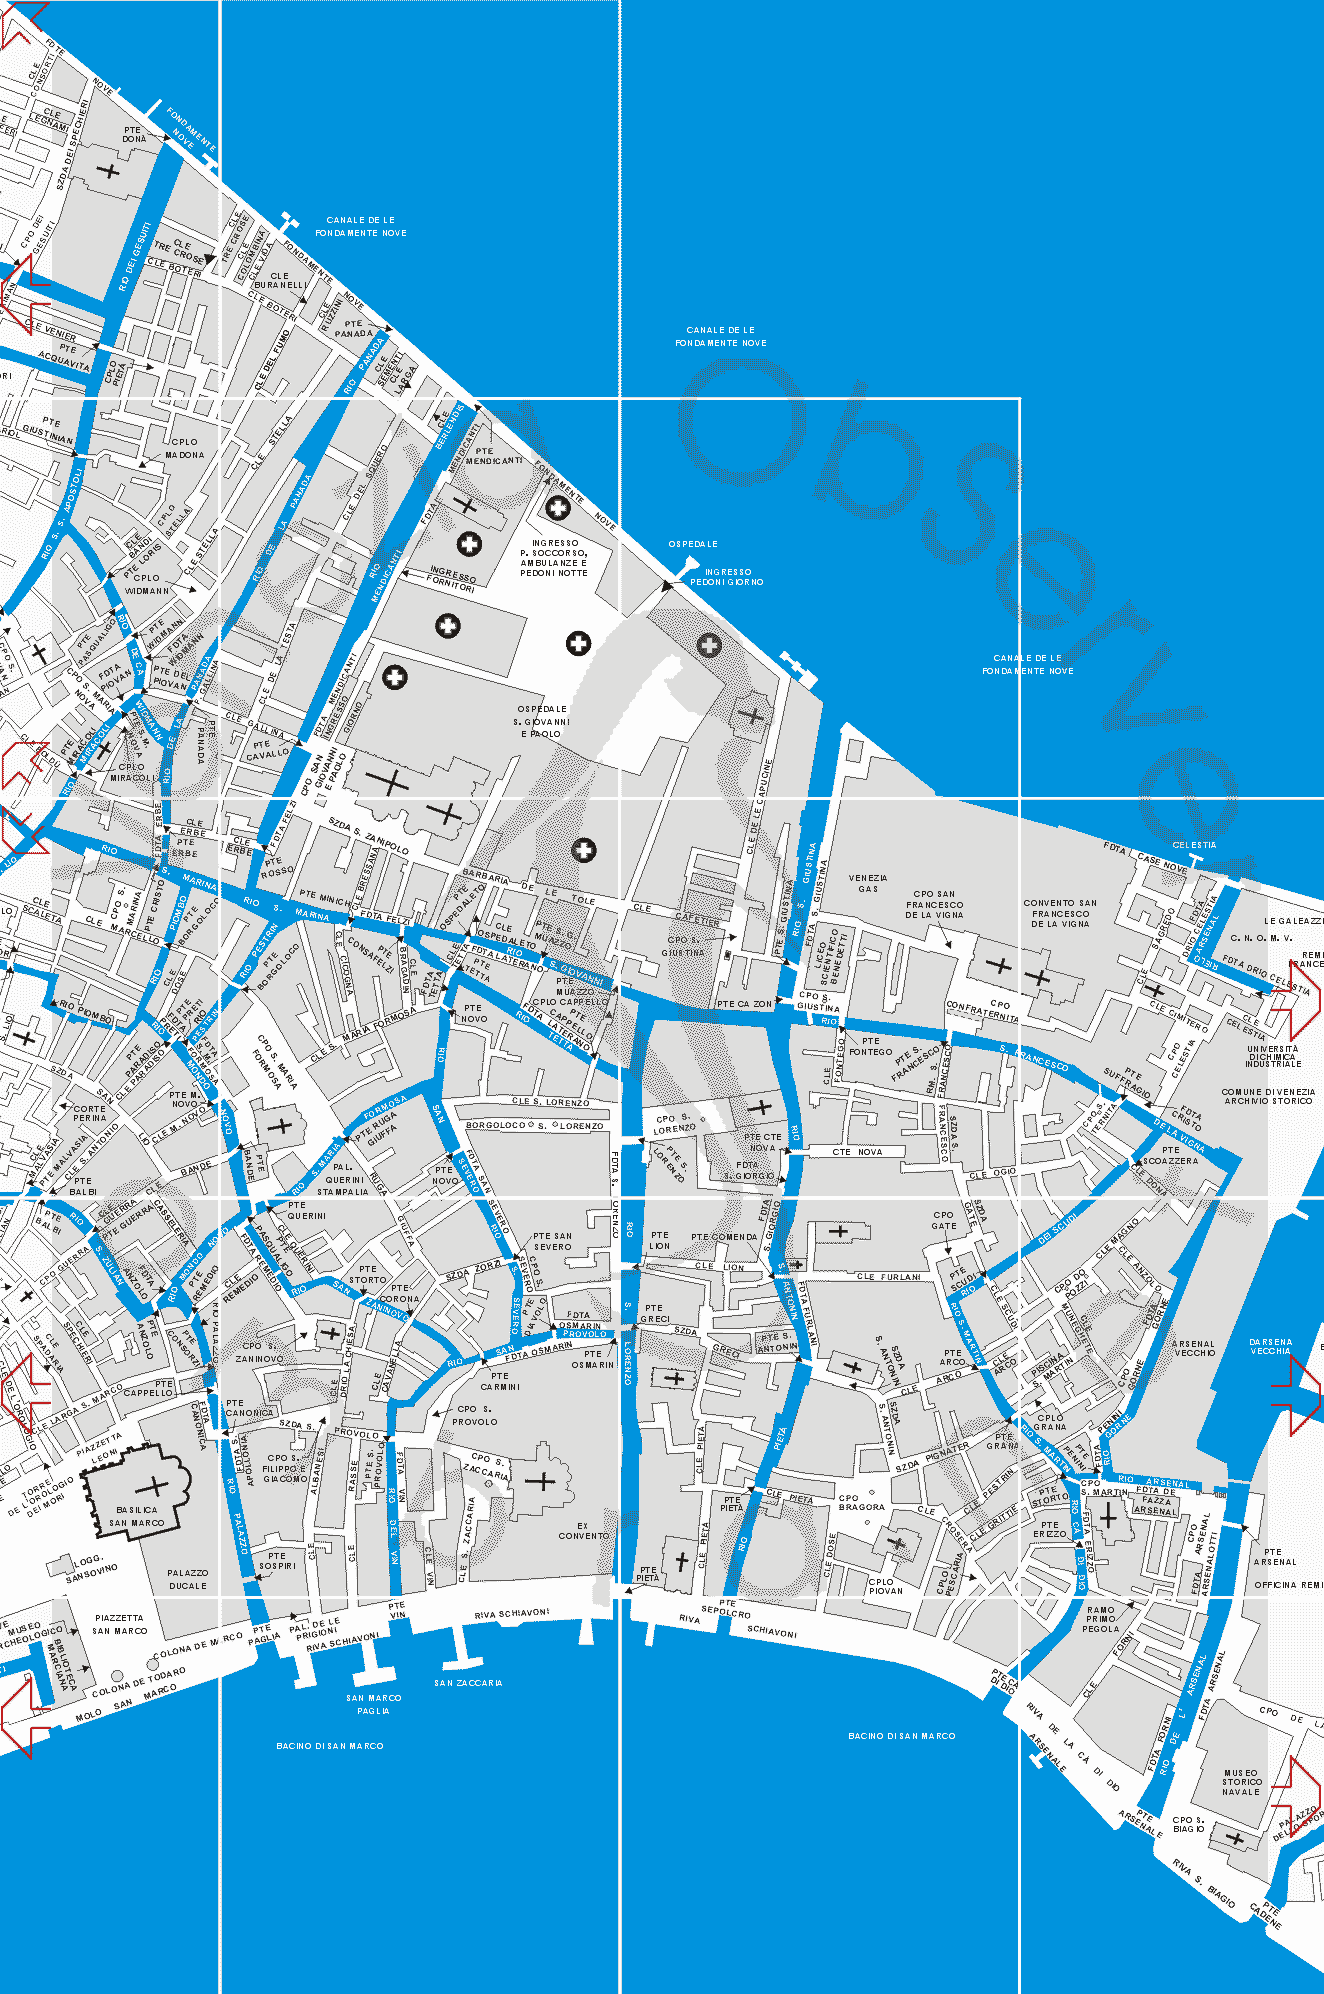 map of Venice Fondamente Nove S.S. Giovanni e Paolo Riva Schiavoni with venetian itineraries